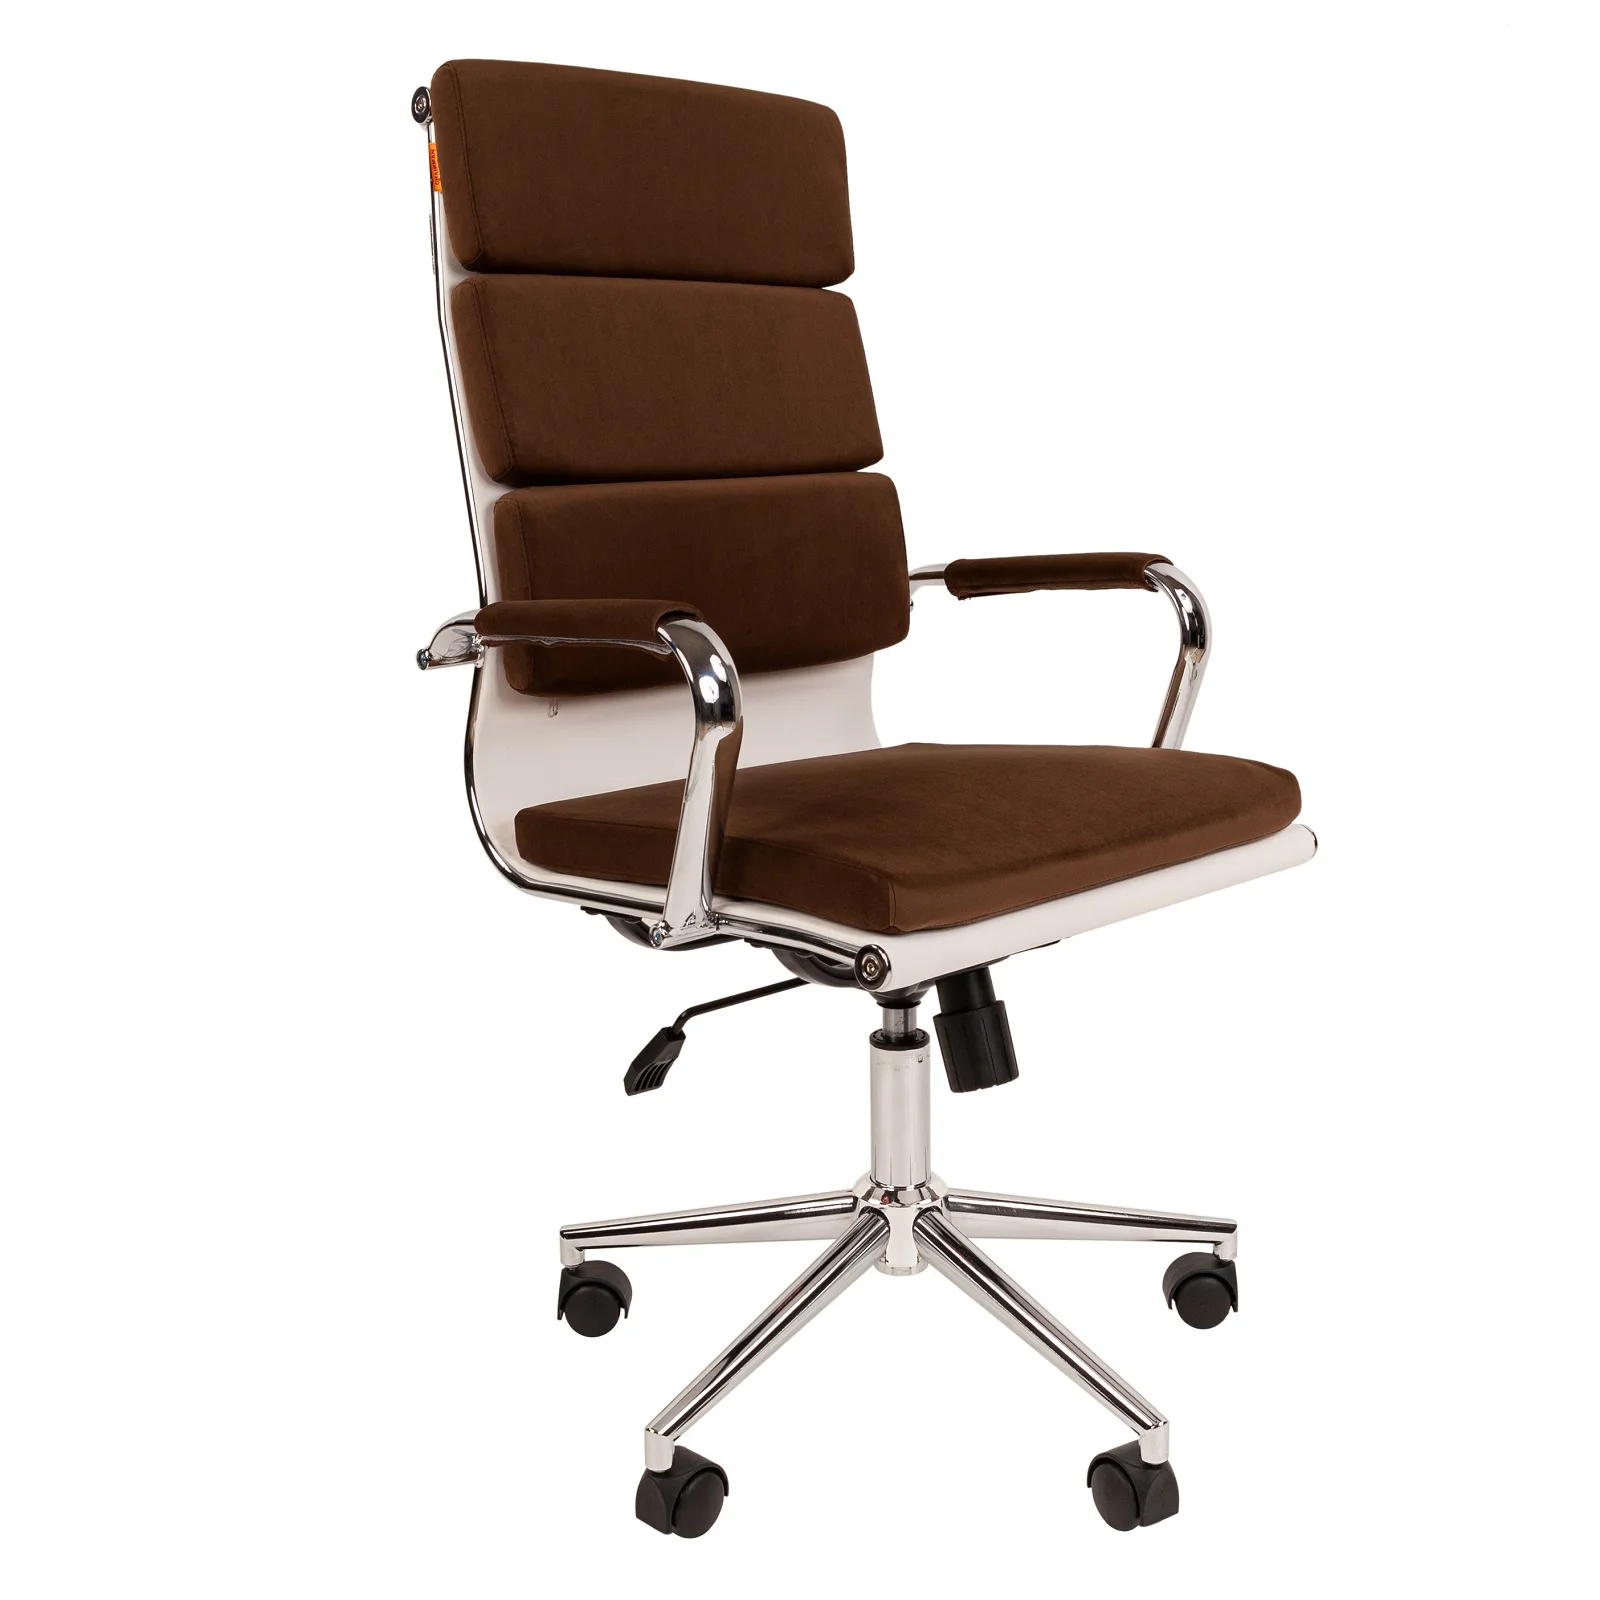 Дизайнерское мягкое кресло CHAIRMAN HOME 750 обивка велюр на хромированном каркасе в